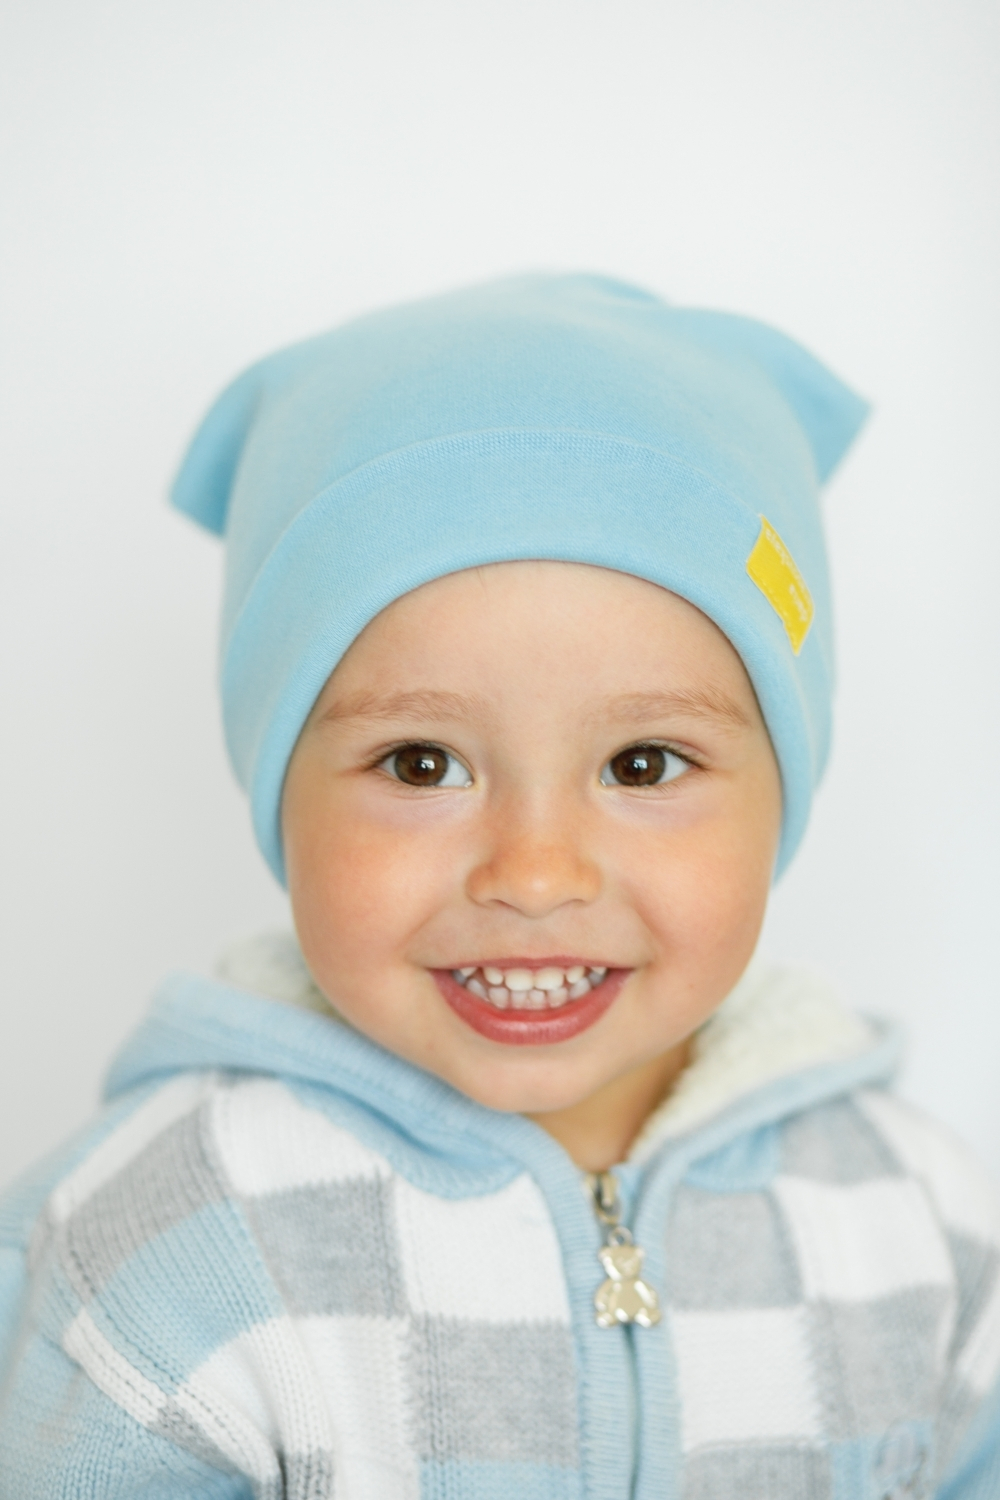 Детская шапка хлопковая гладкая голубая